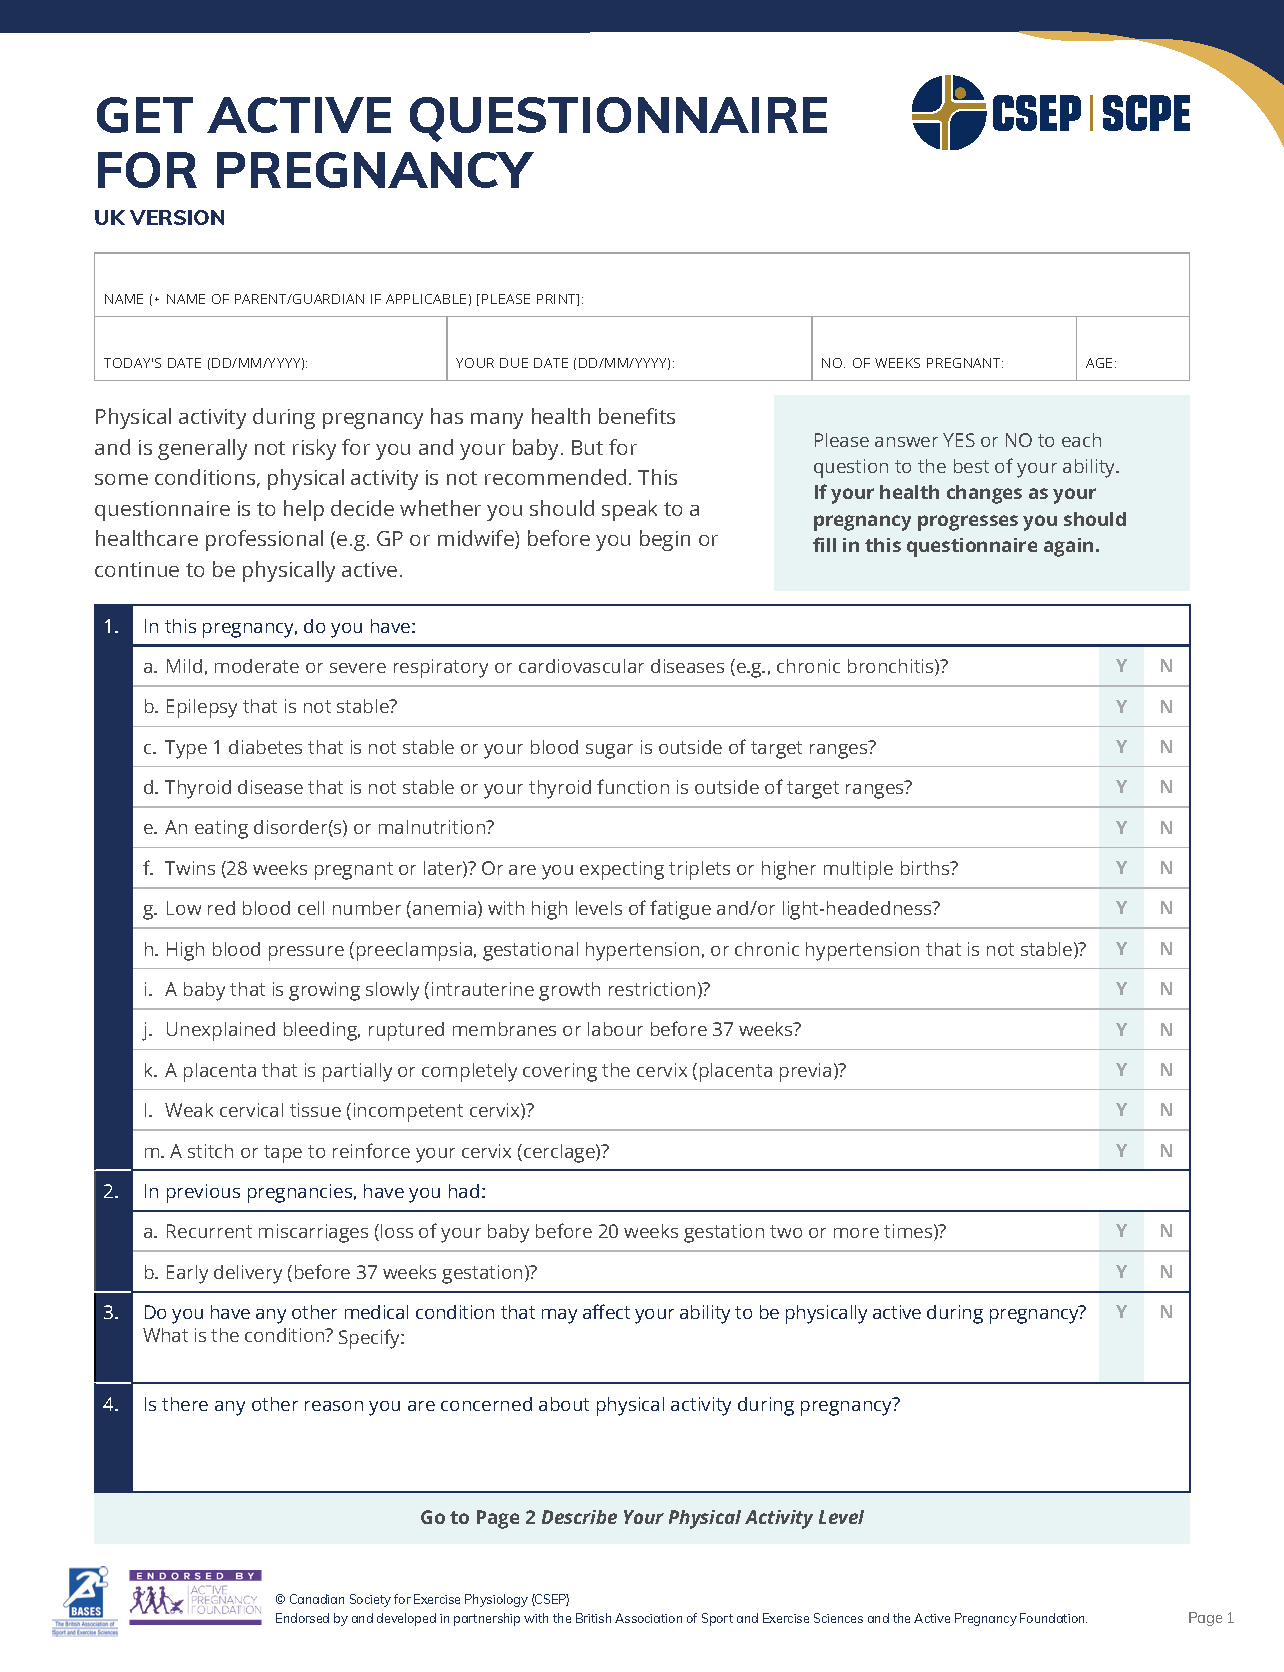 Get Active Questionnaire for Pregnancy p1